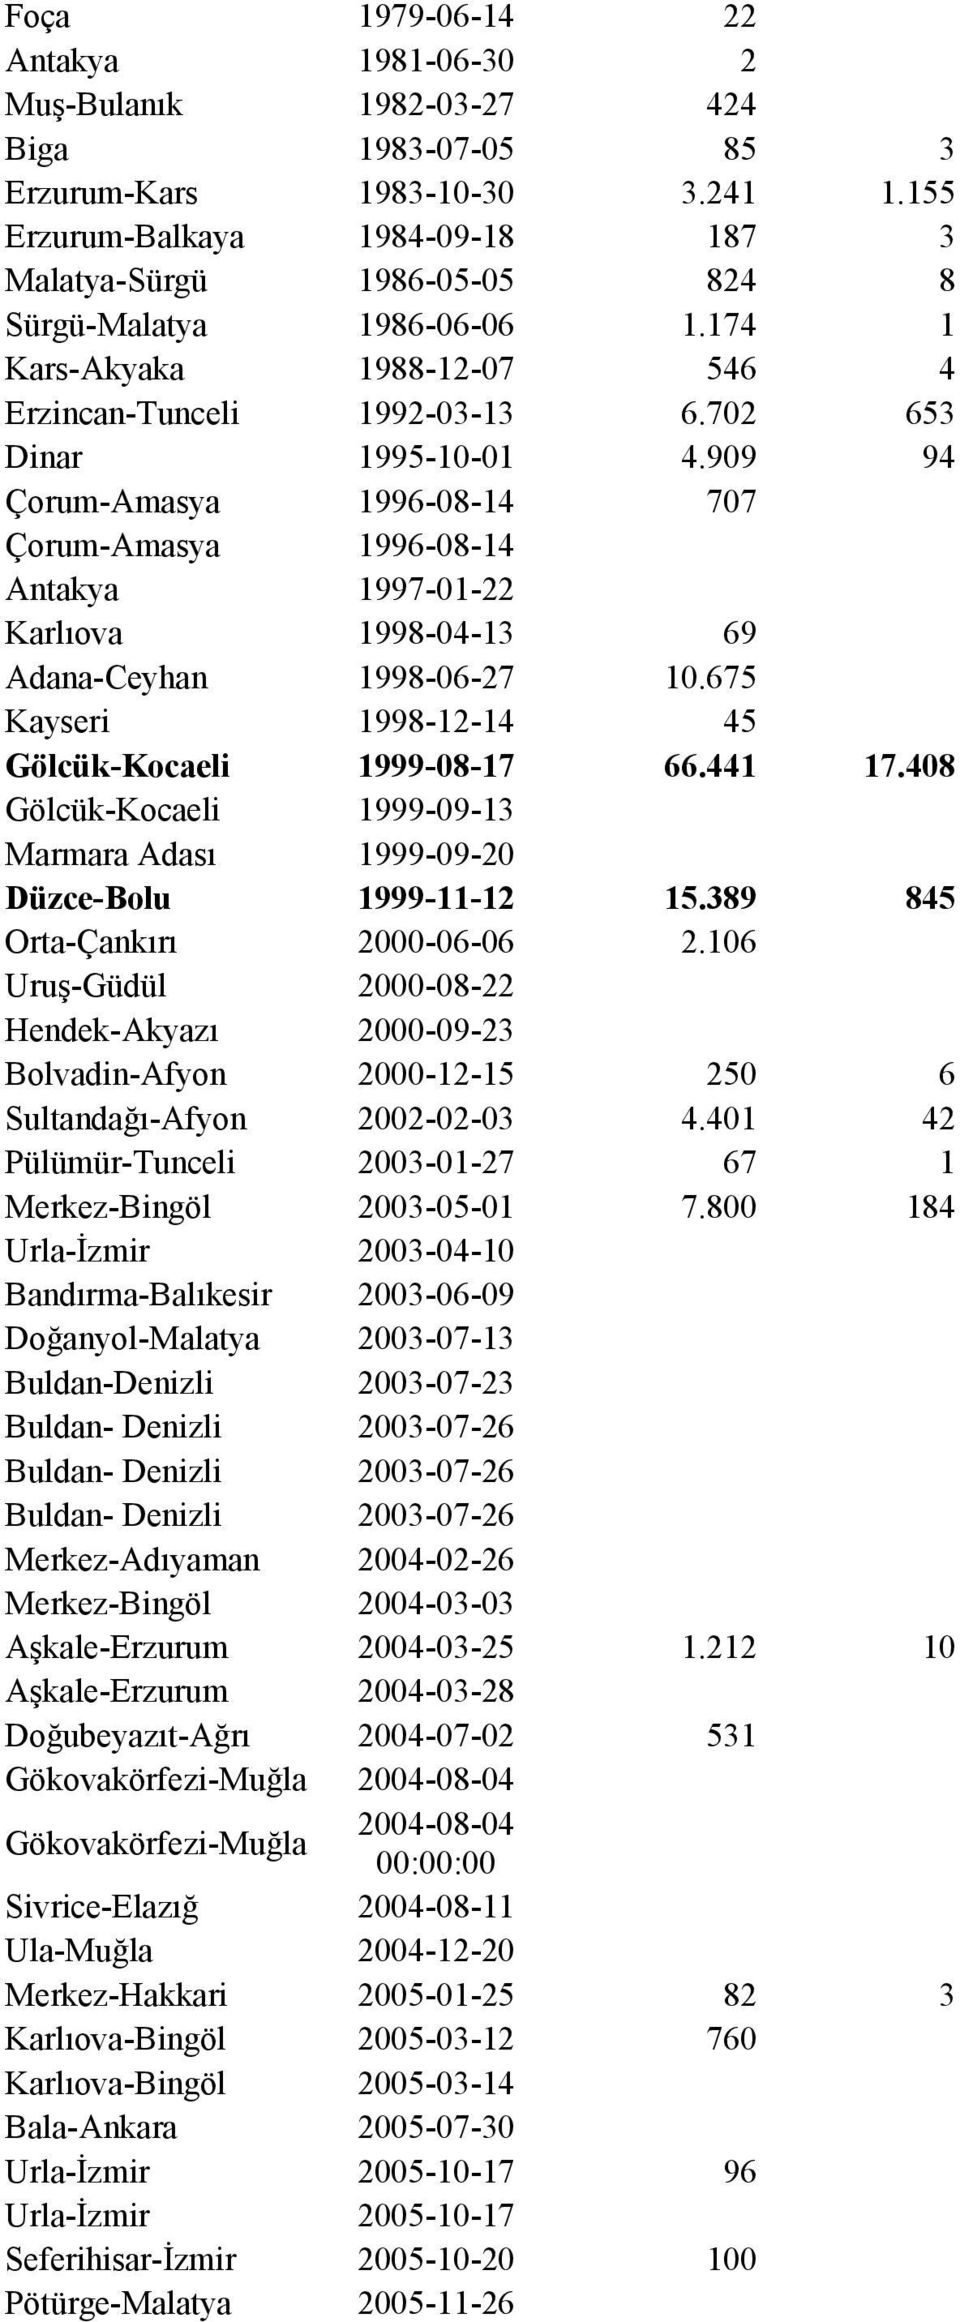 909 94 Çorum-Amasya 1996-08-14 707 Çorum-Amasya 1996-08-14 Antakya 1997-01-22 Karlıova 1998-04-13 69 Adana-Ceyhan 1998-06-27 10.675 Kayseri 1998-12-14 45 Gölcük-Kocaeli 1999-08-17 66.441 17.